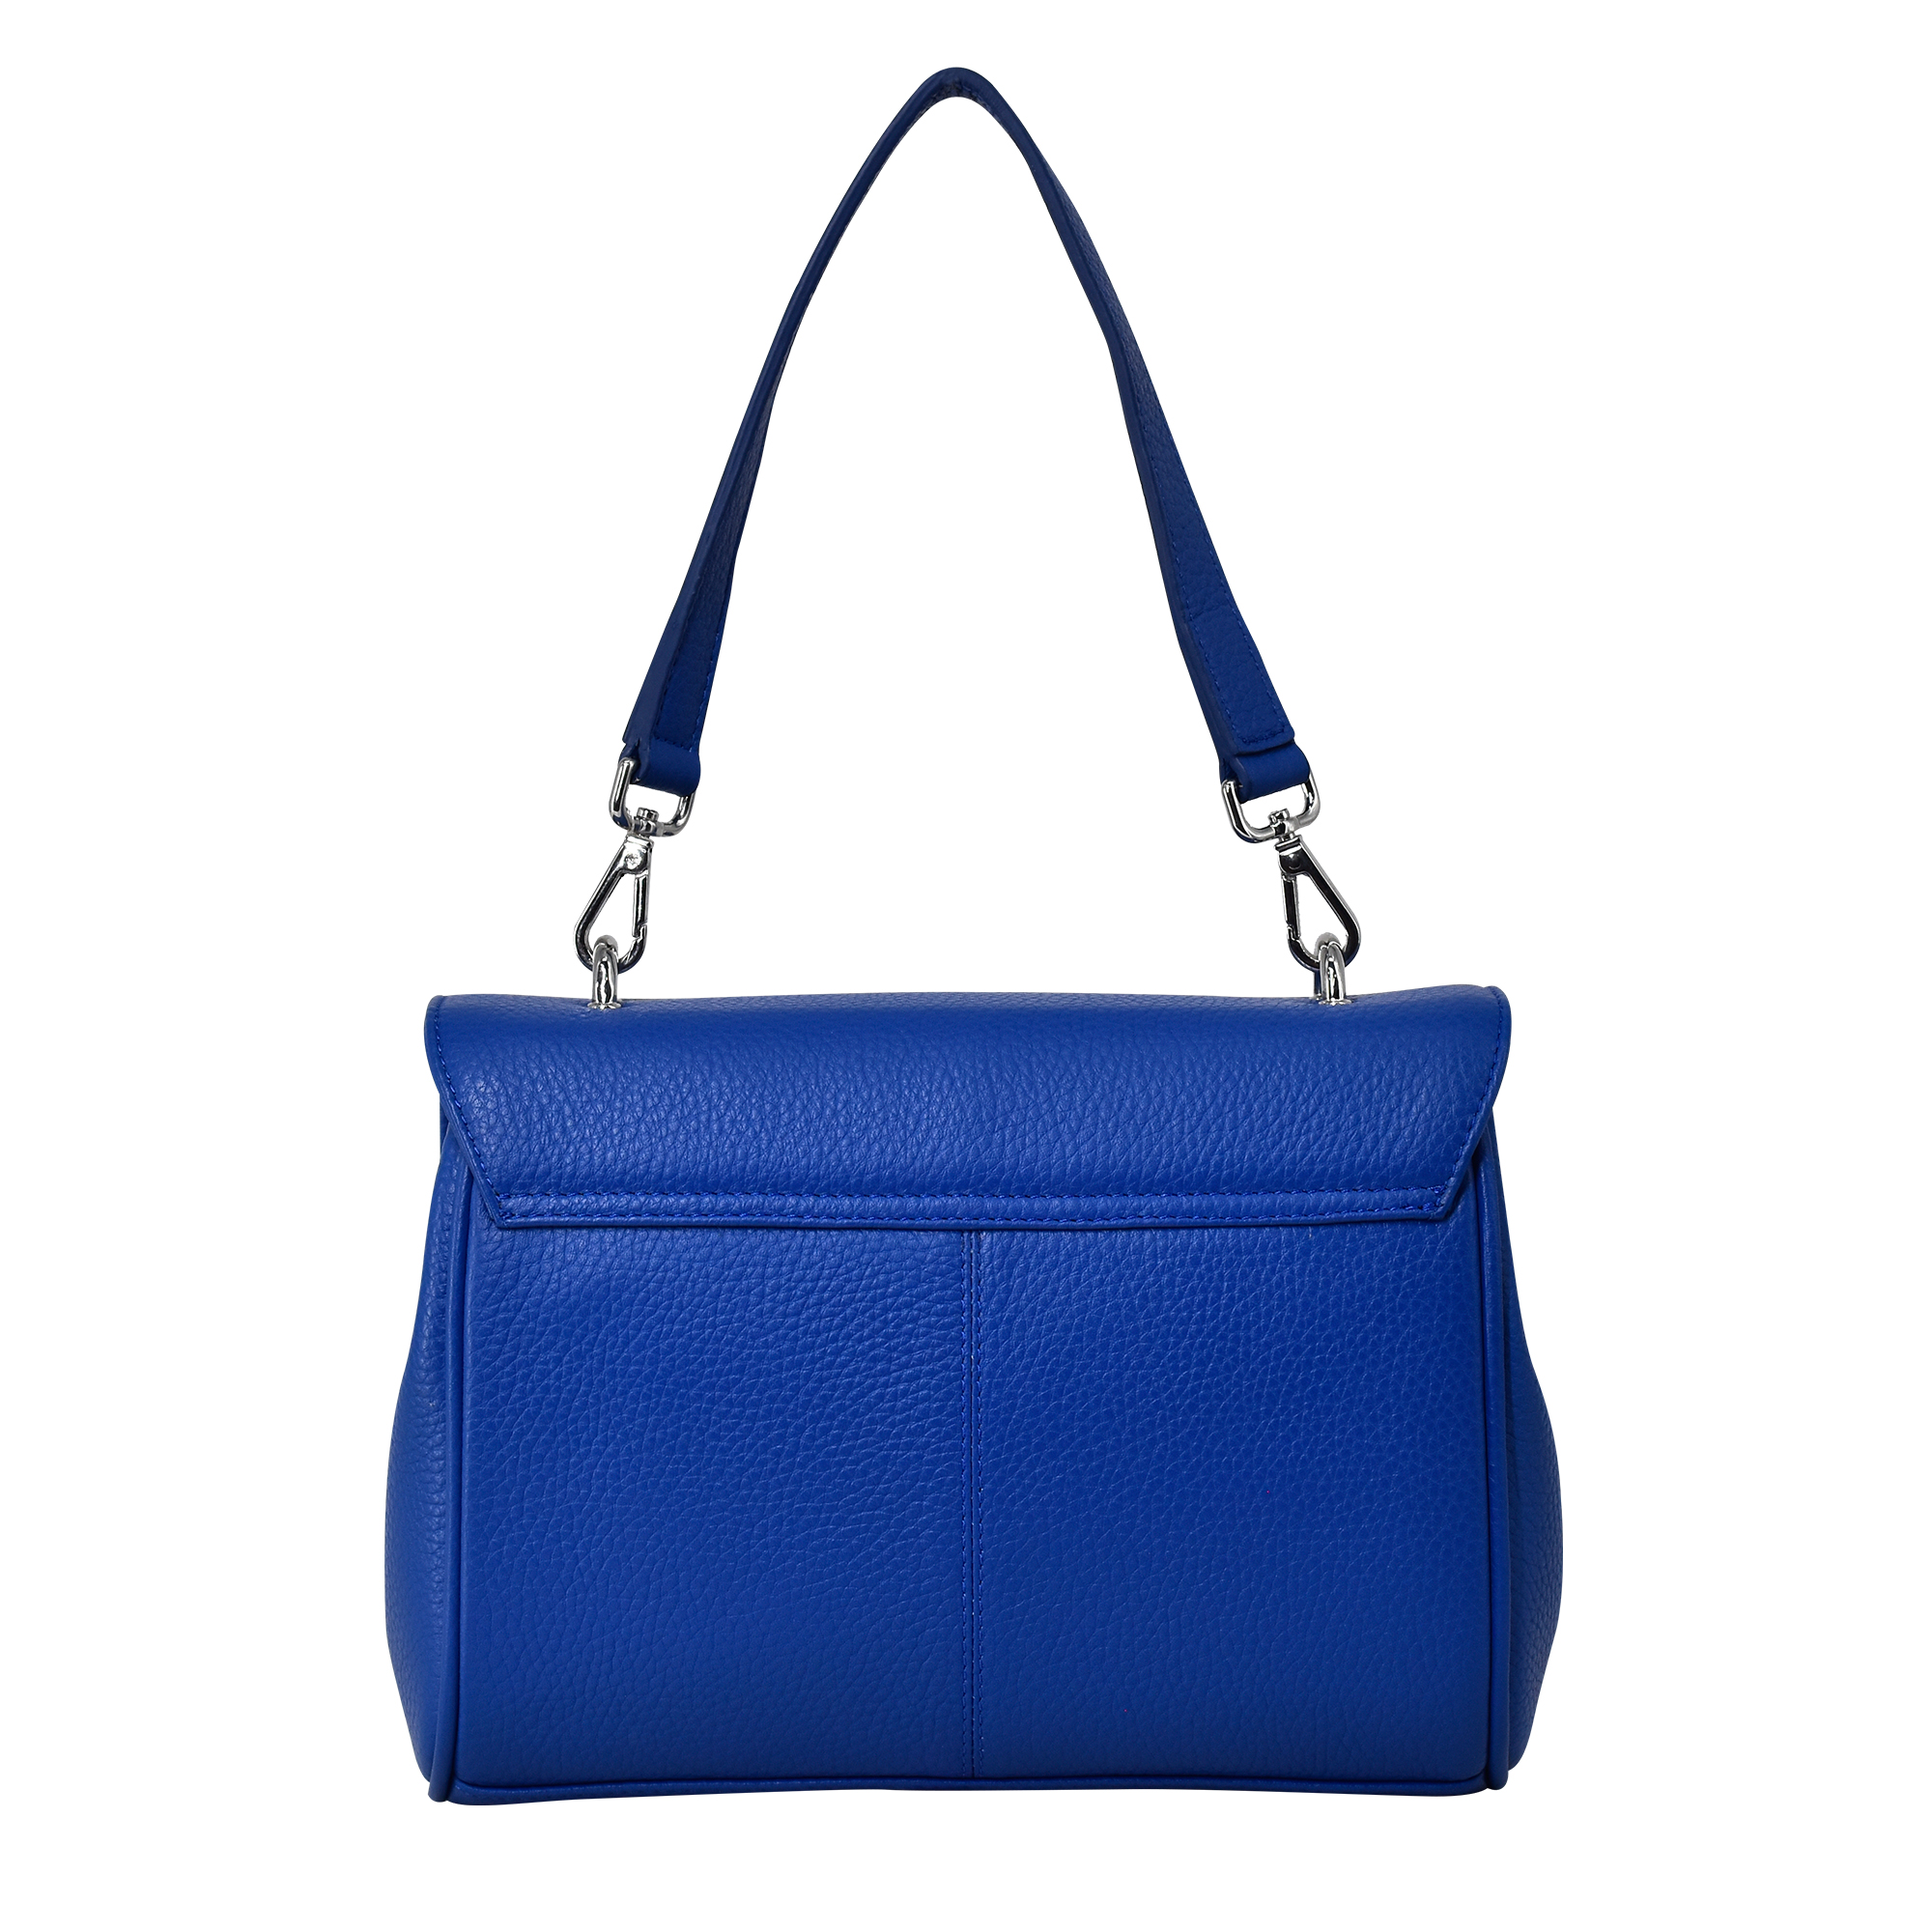 FLAPPY A Crossbody Überschlagtasche mit neuem Nylonriemen, royal blue